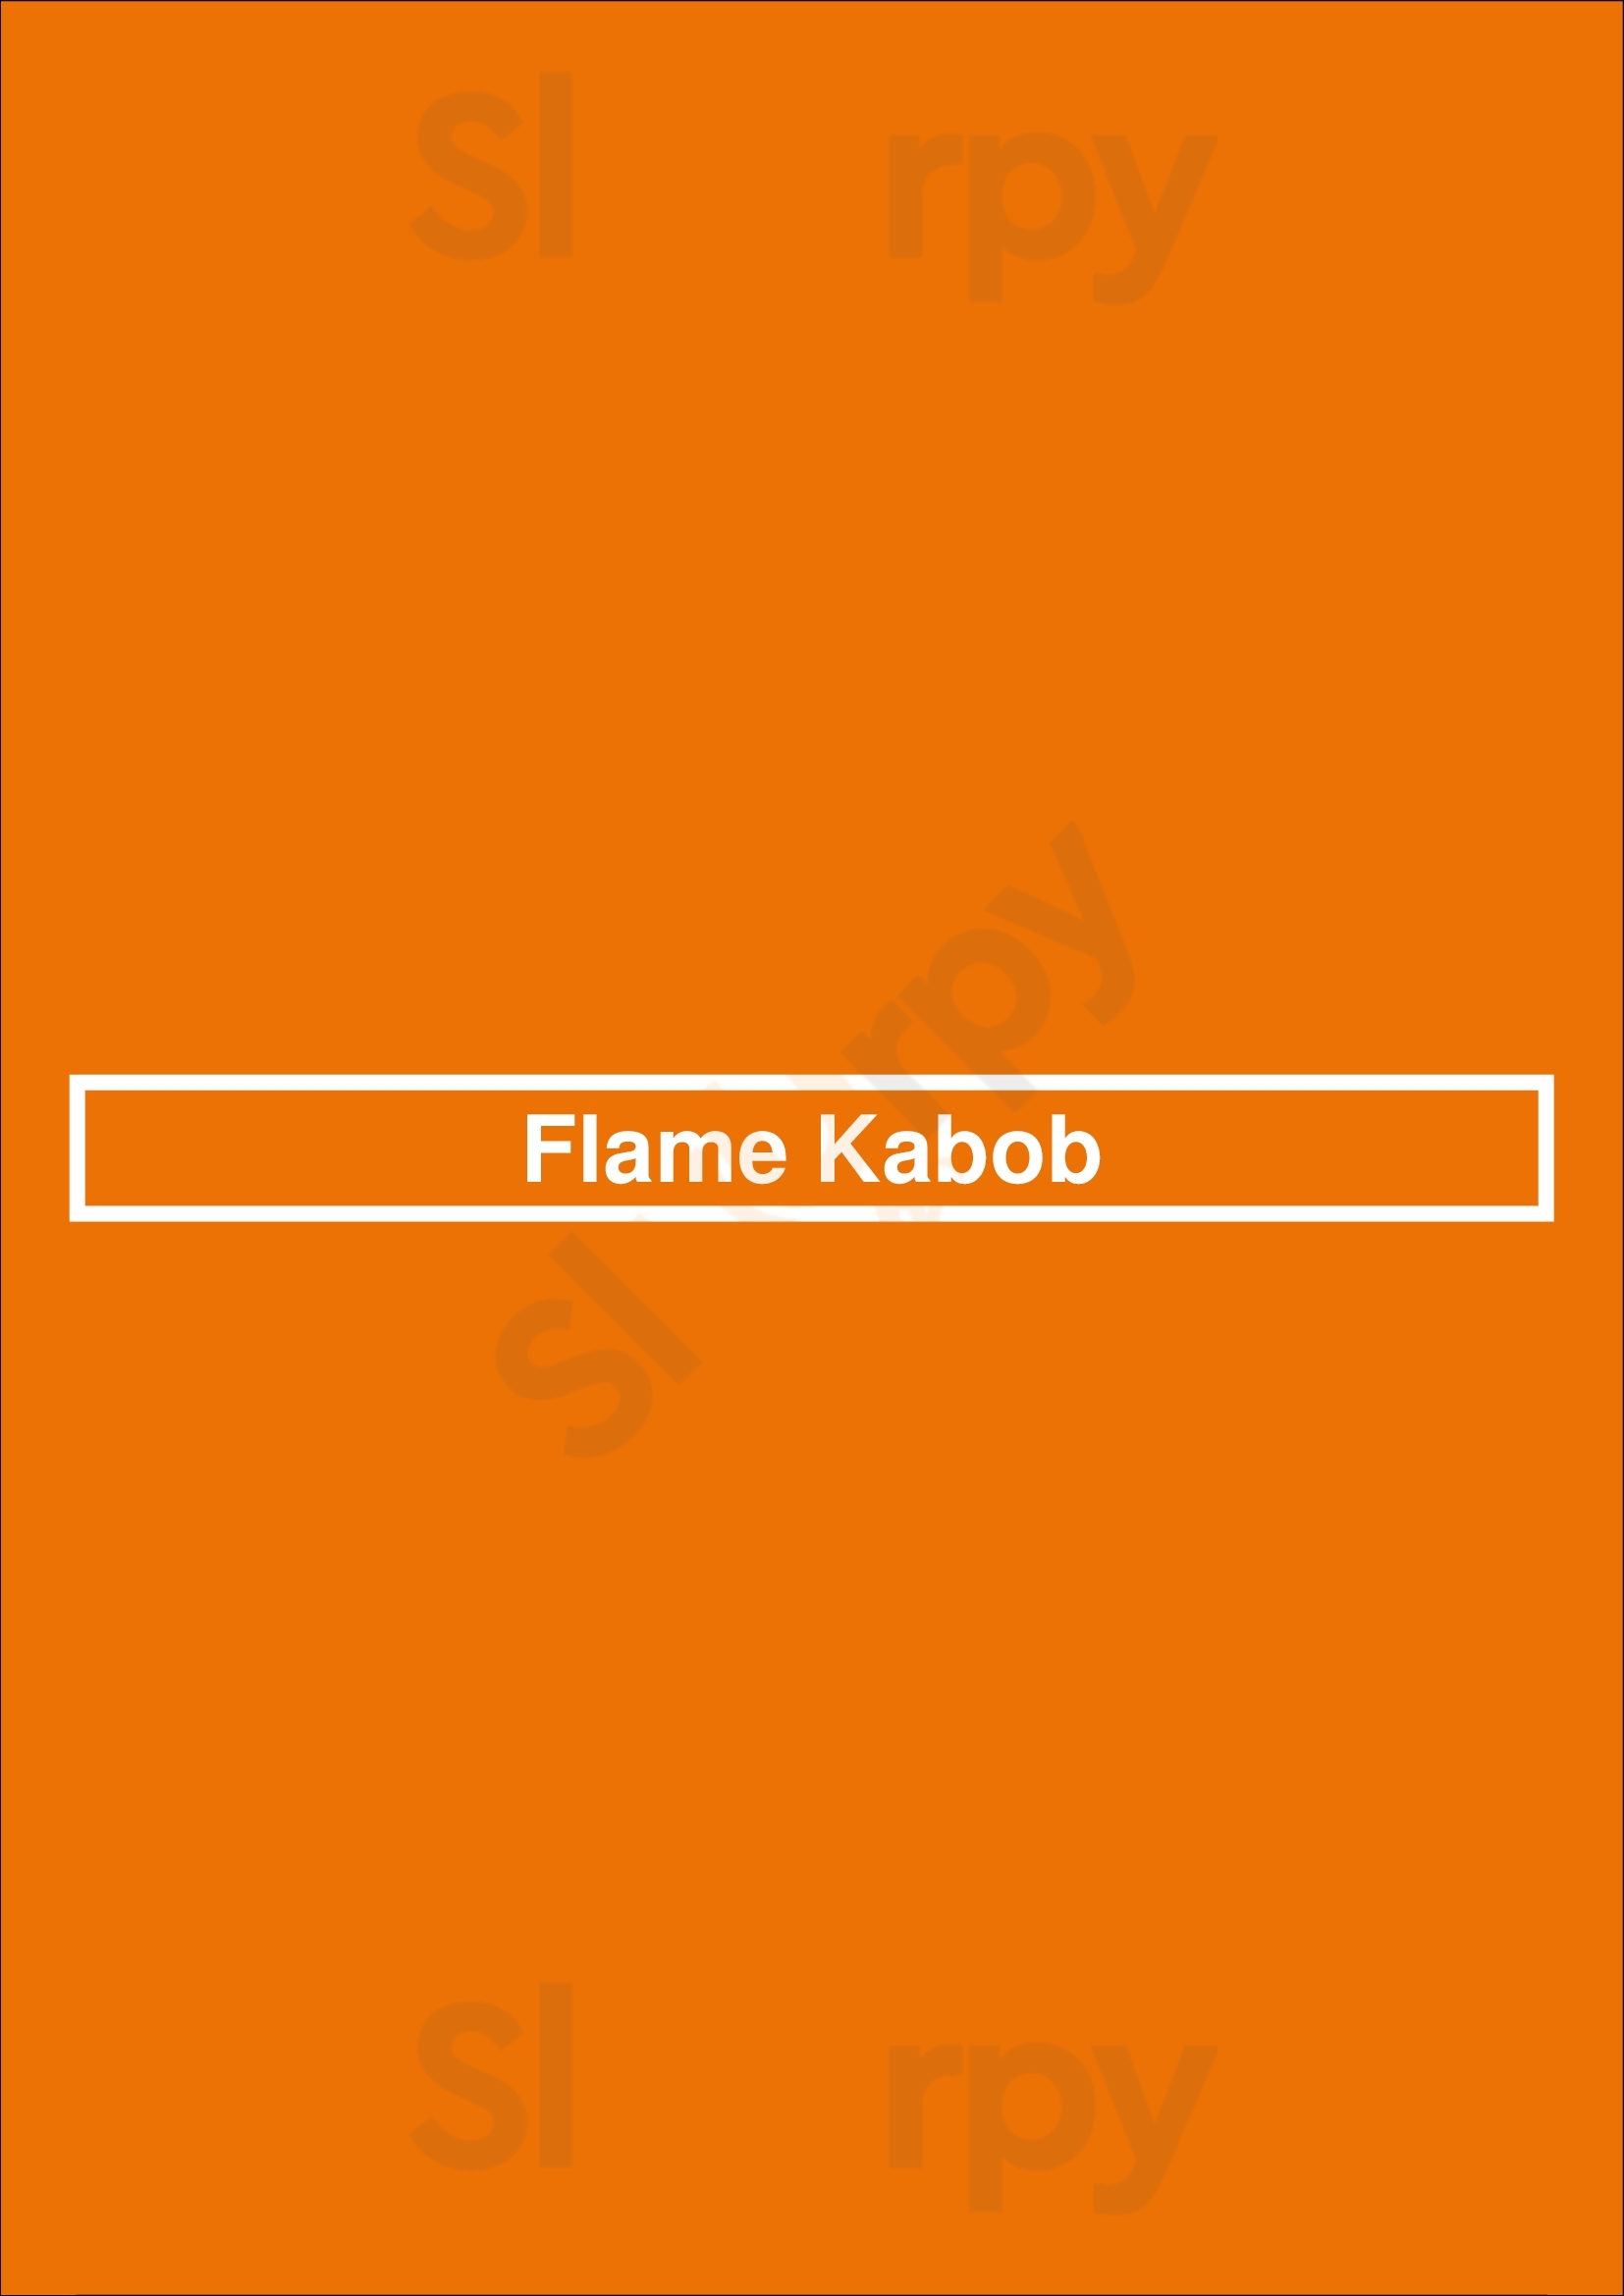 Flame Kabob Orlando Menu - 1